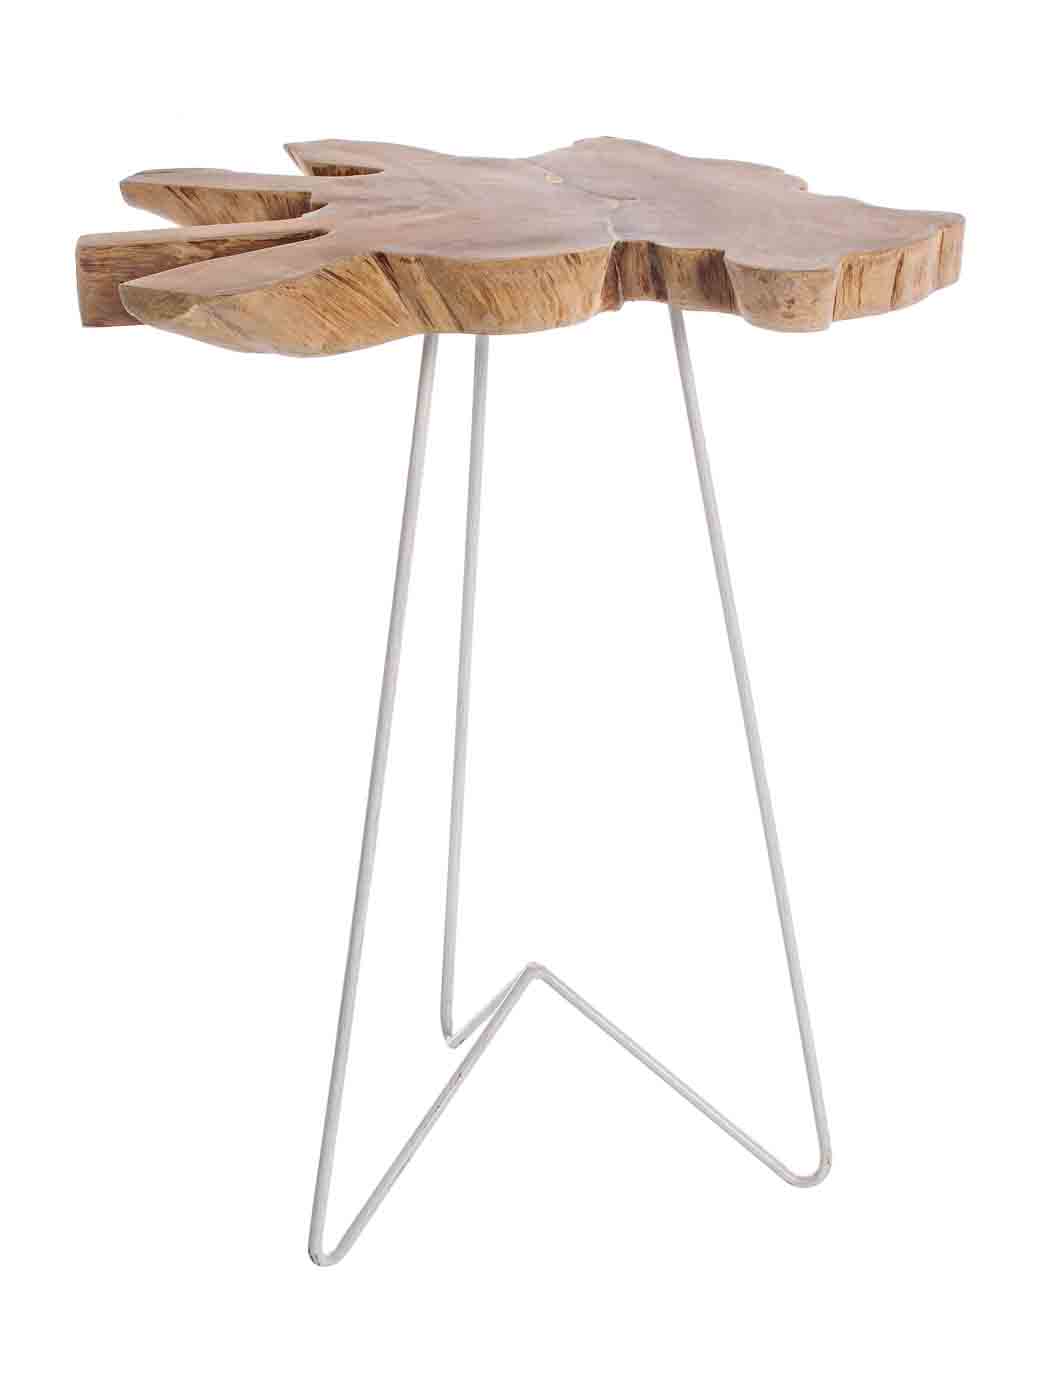 Die Tischplatte des Beistelltisches Savanna wurde aus einer Teakholz-Wurzel gefertigt, dadurch ist jeder Tisch ein Unikat. Das Gestell ist aus Stahl und ist in einem weißen Farbton.